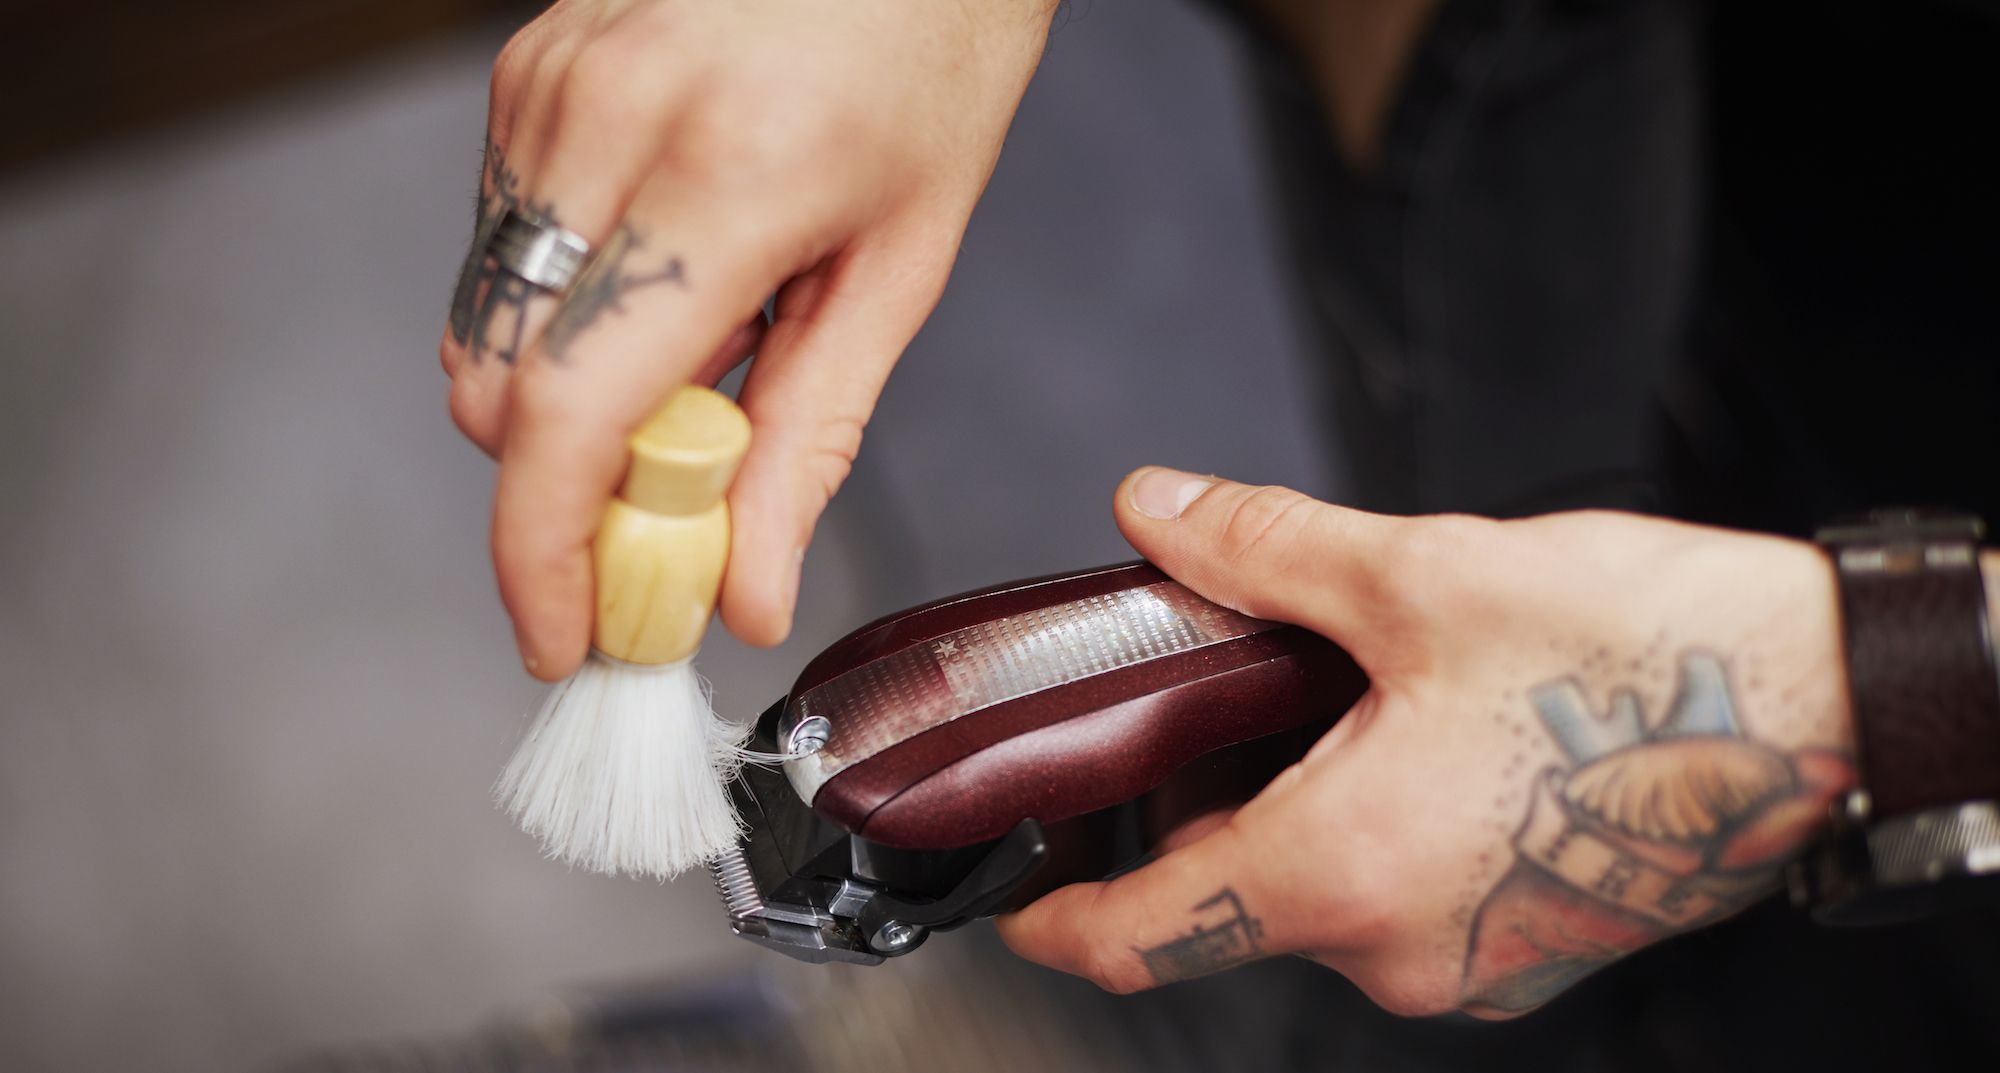 best men's grooming electric razor